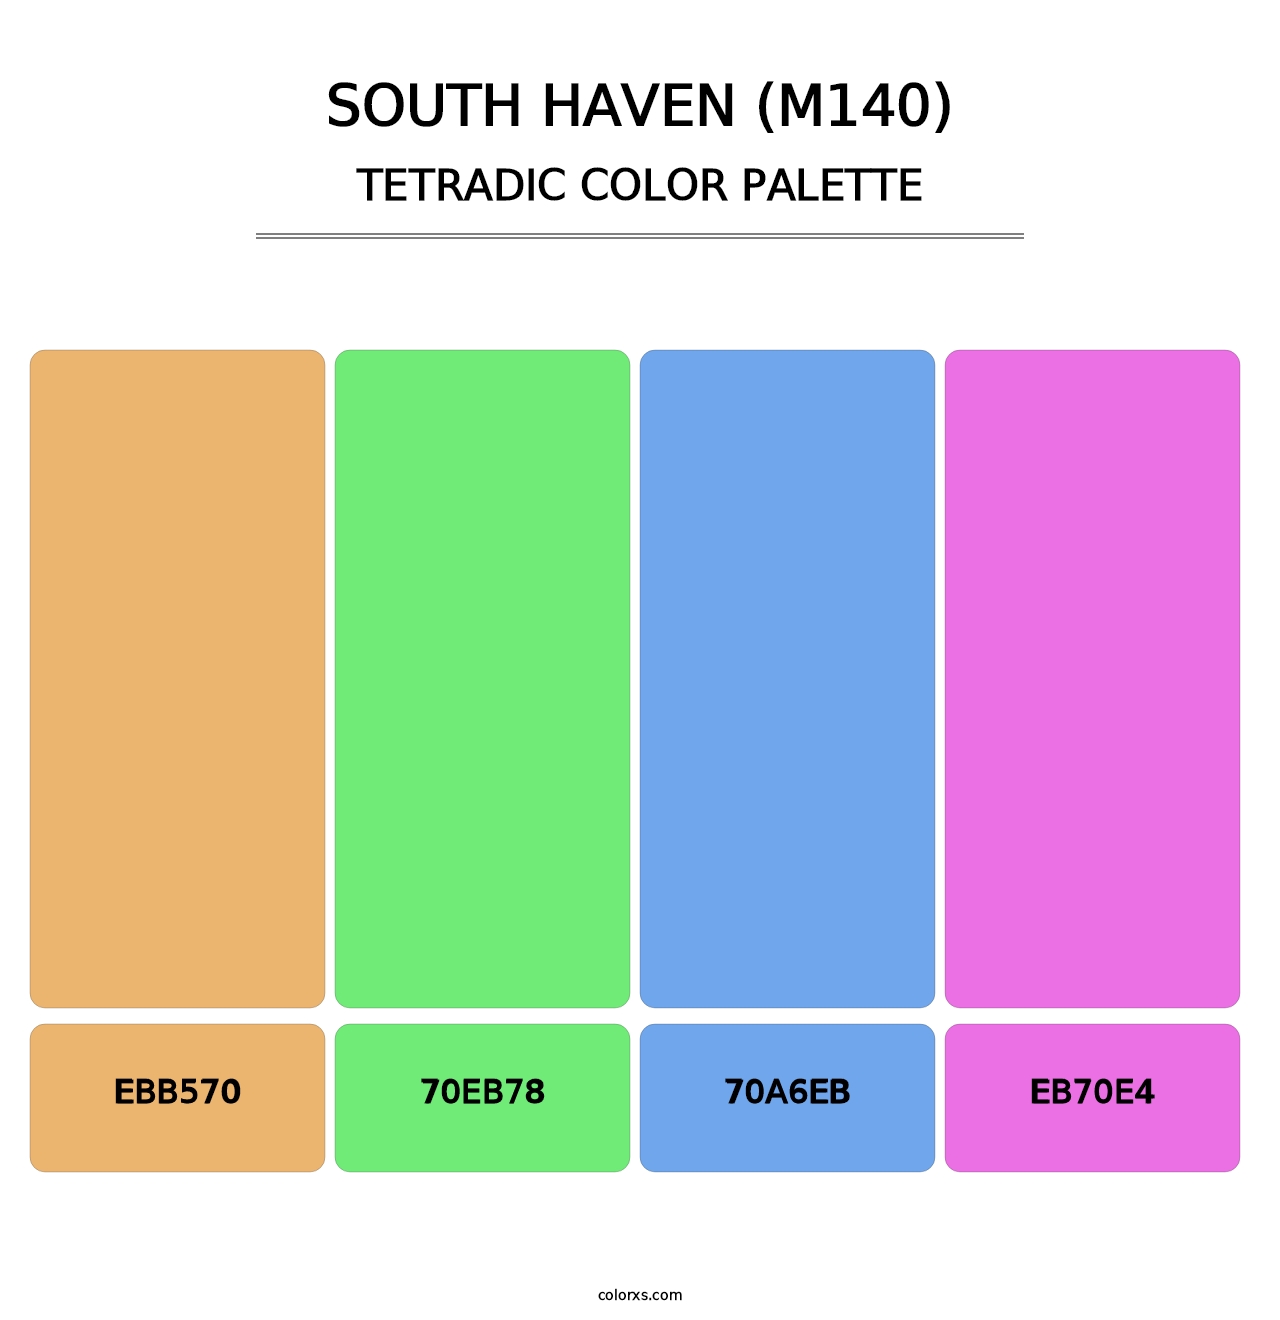 South Haven (M140) - Tetradic Color Palette